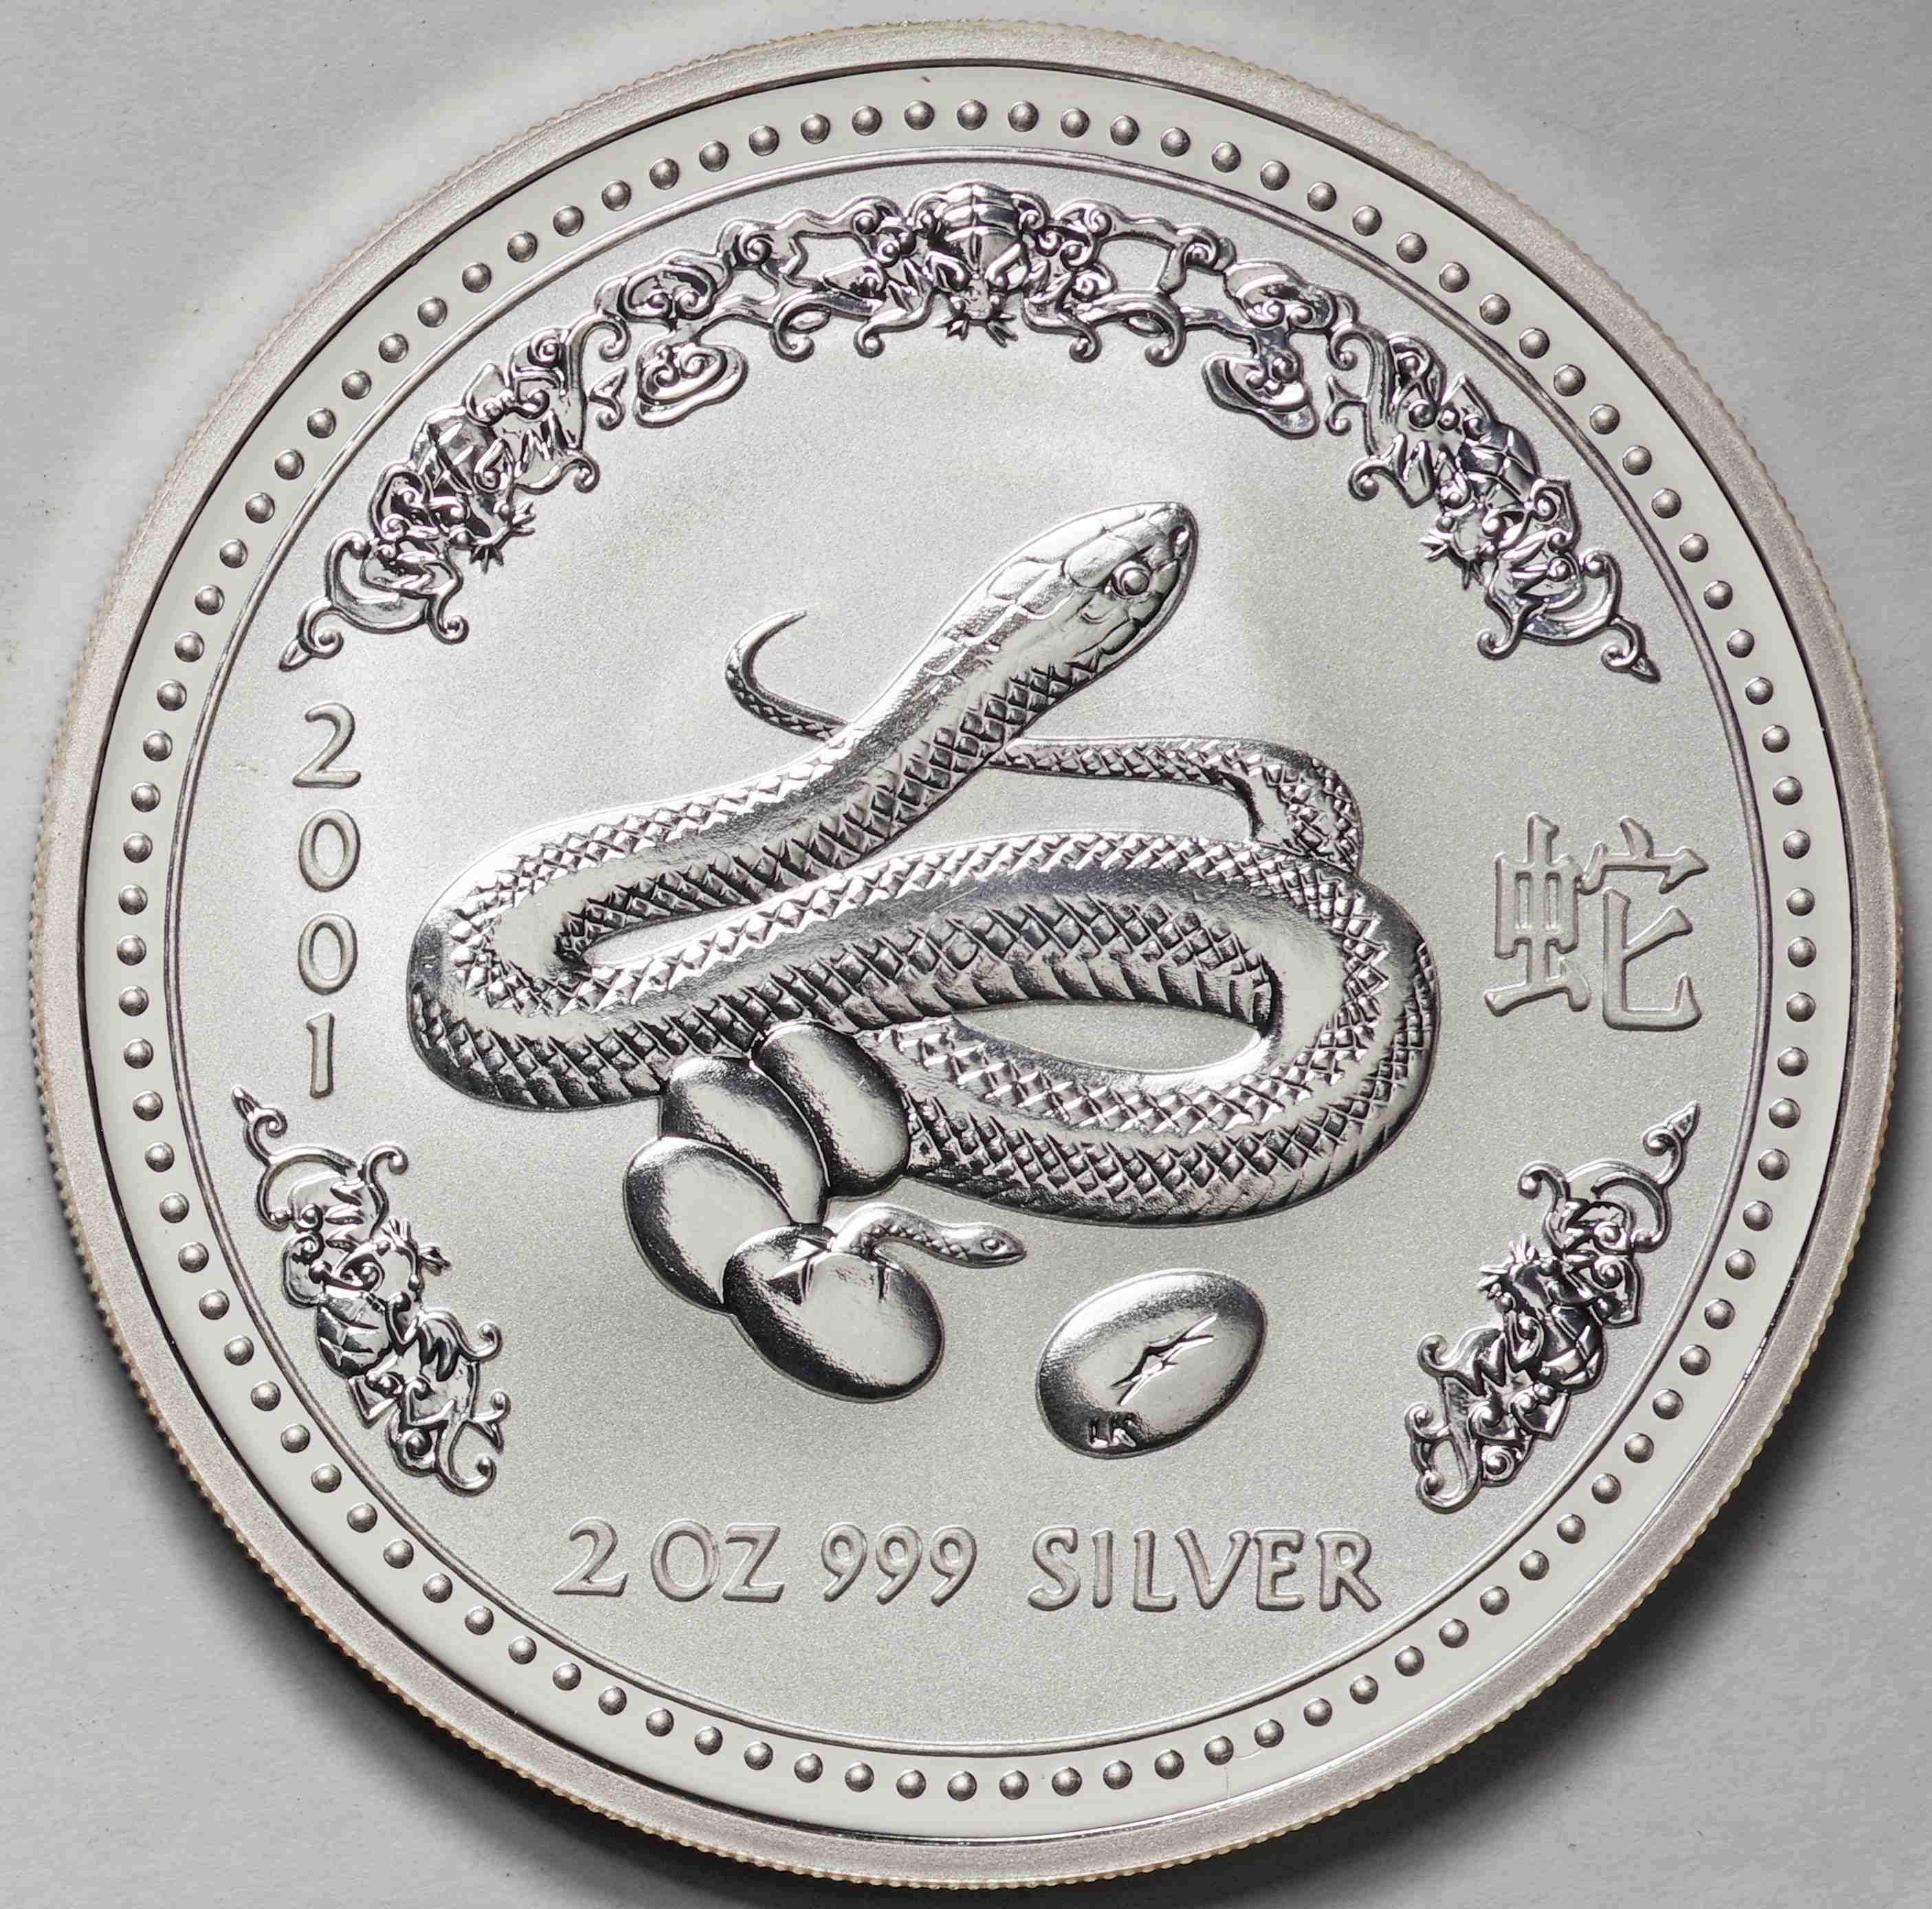 オーストラリア-Australia. 十二支干支 巳年蛇図 2ドル(2オンス)銀貨 